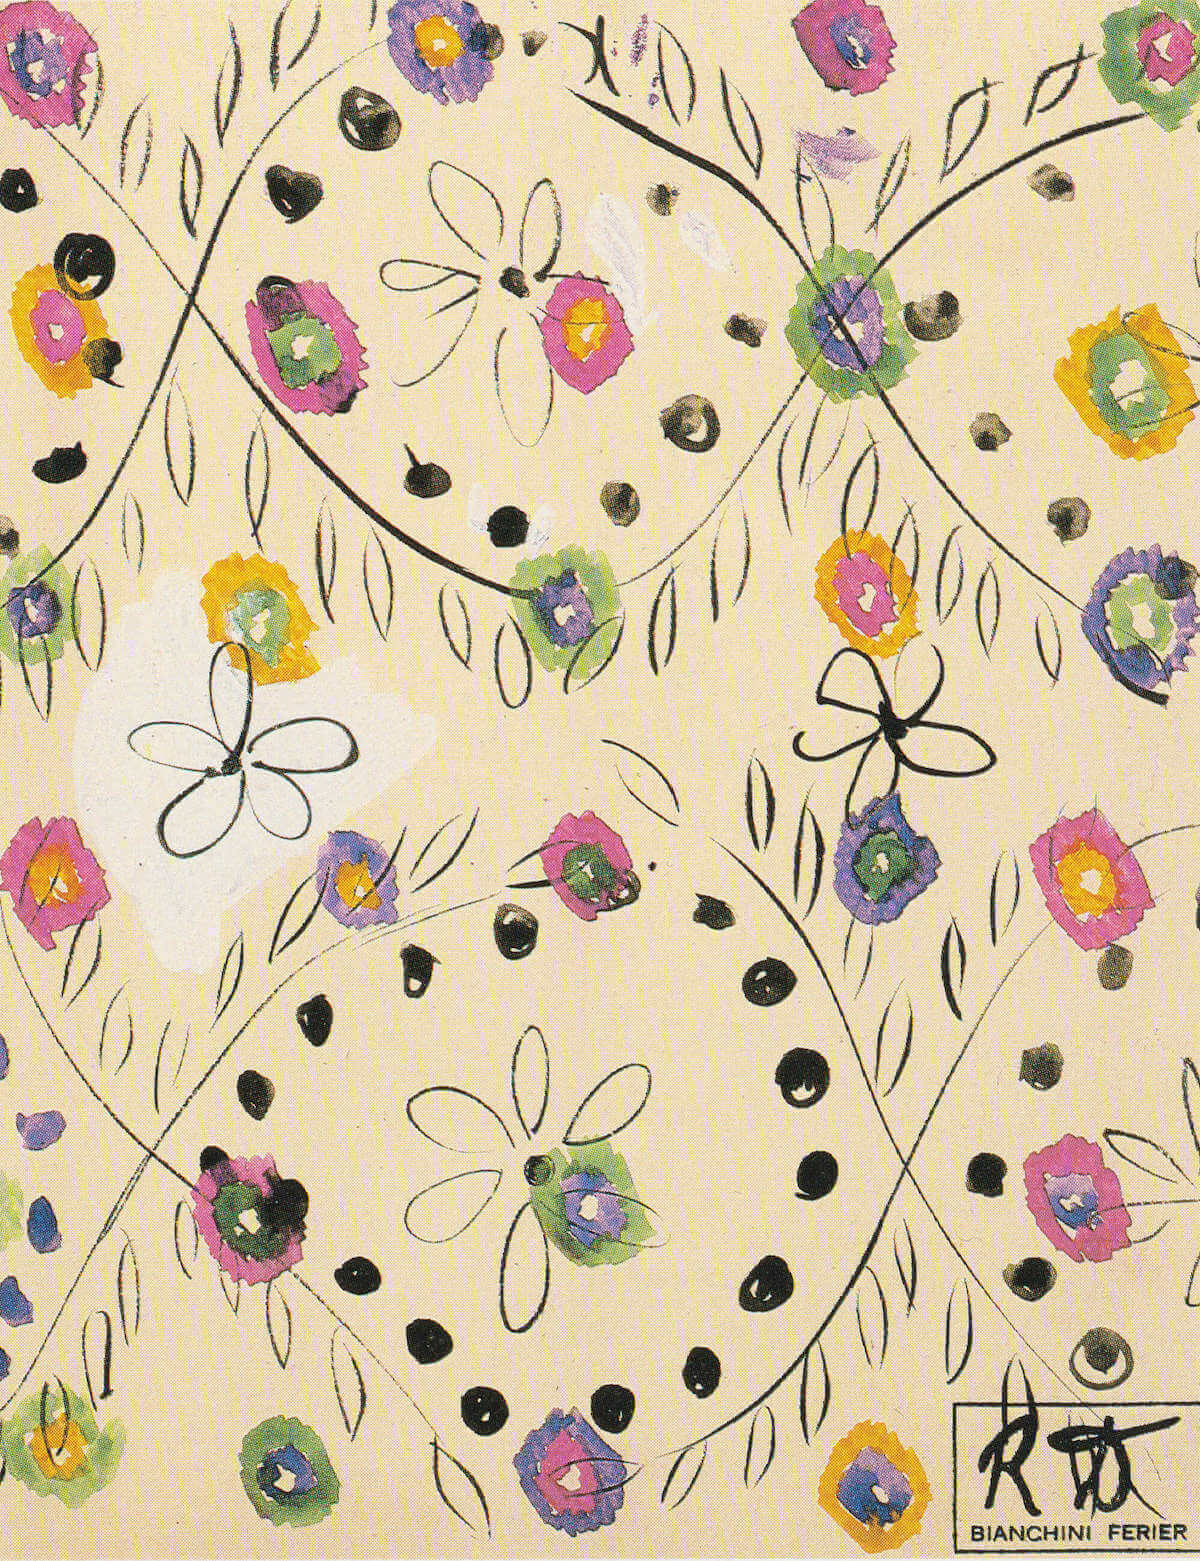 Raoul Dufy, Guirlandes florales (textile design), gouache, 31.5 x 24.5 cm, 12 ⅜ x 9 ⅝ inches